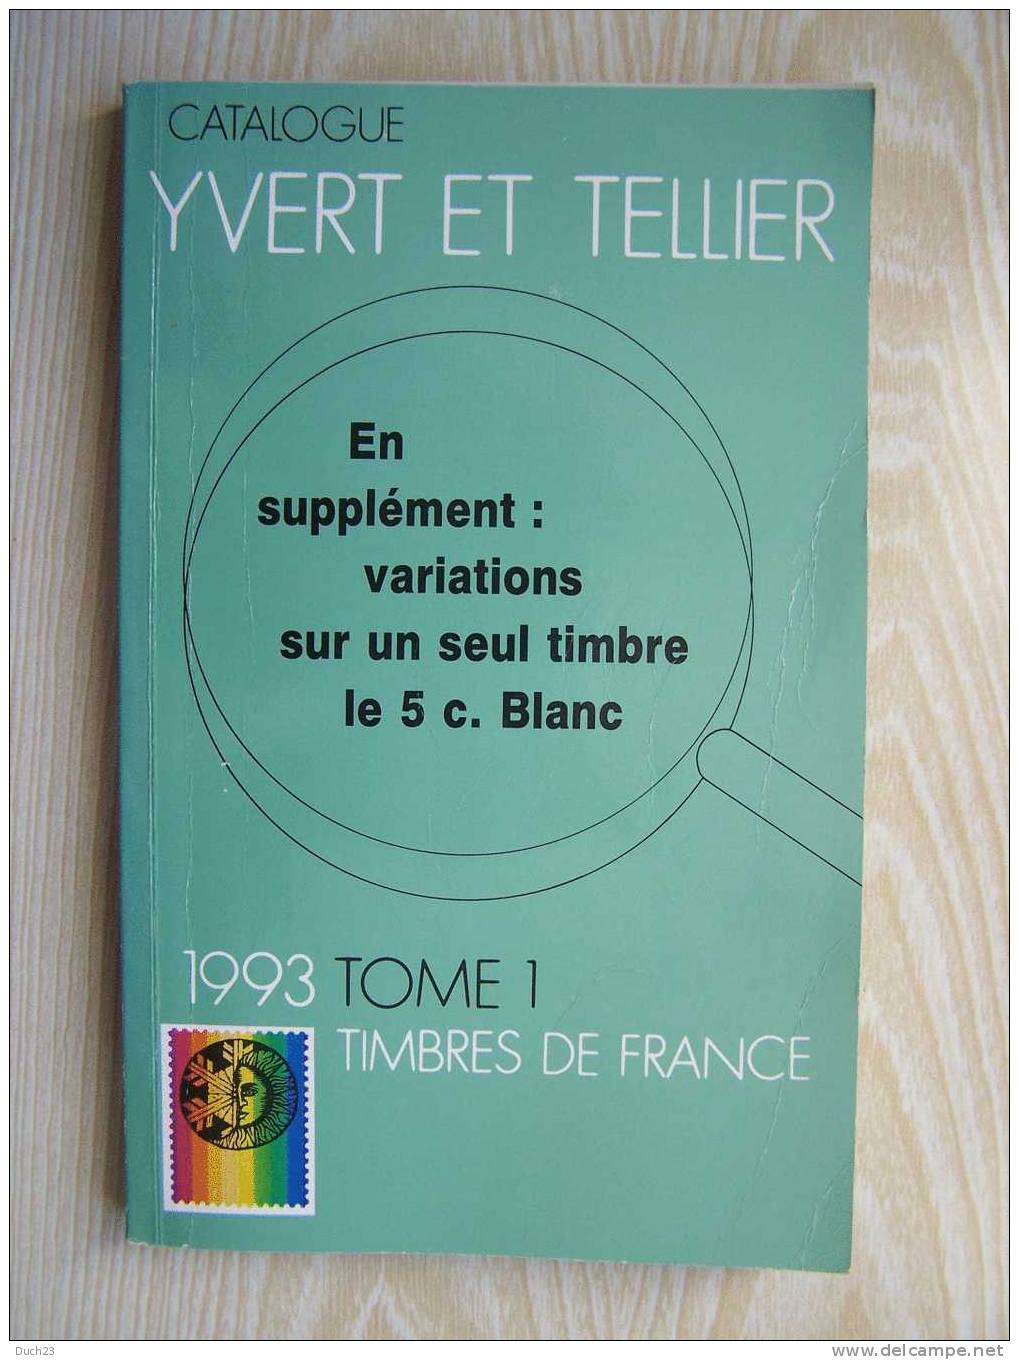 CATALOGUE DE COTATION YVERT ET TELLIER ANNEE 1993 TOME 1   BON ETAT   REF CD - Frankrijk